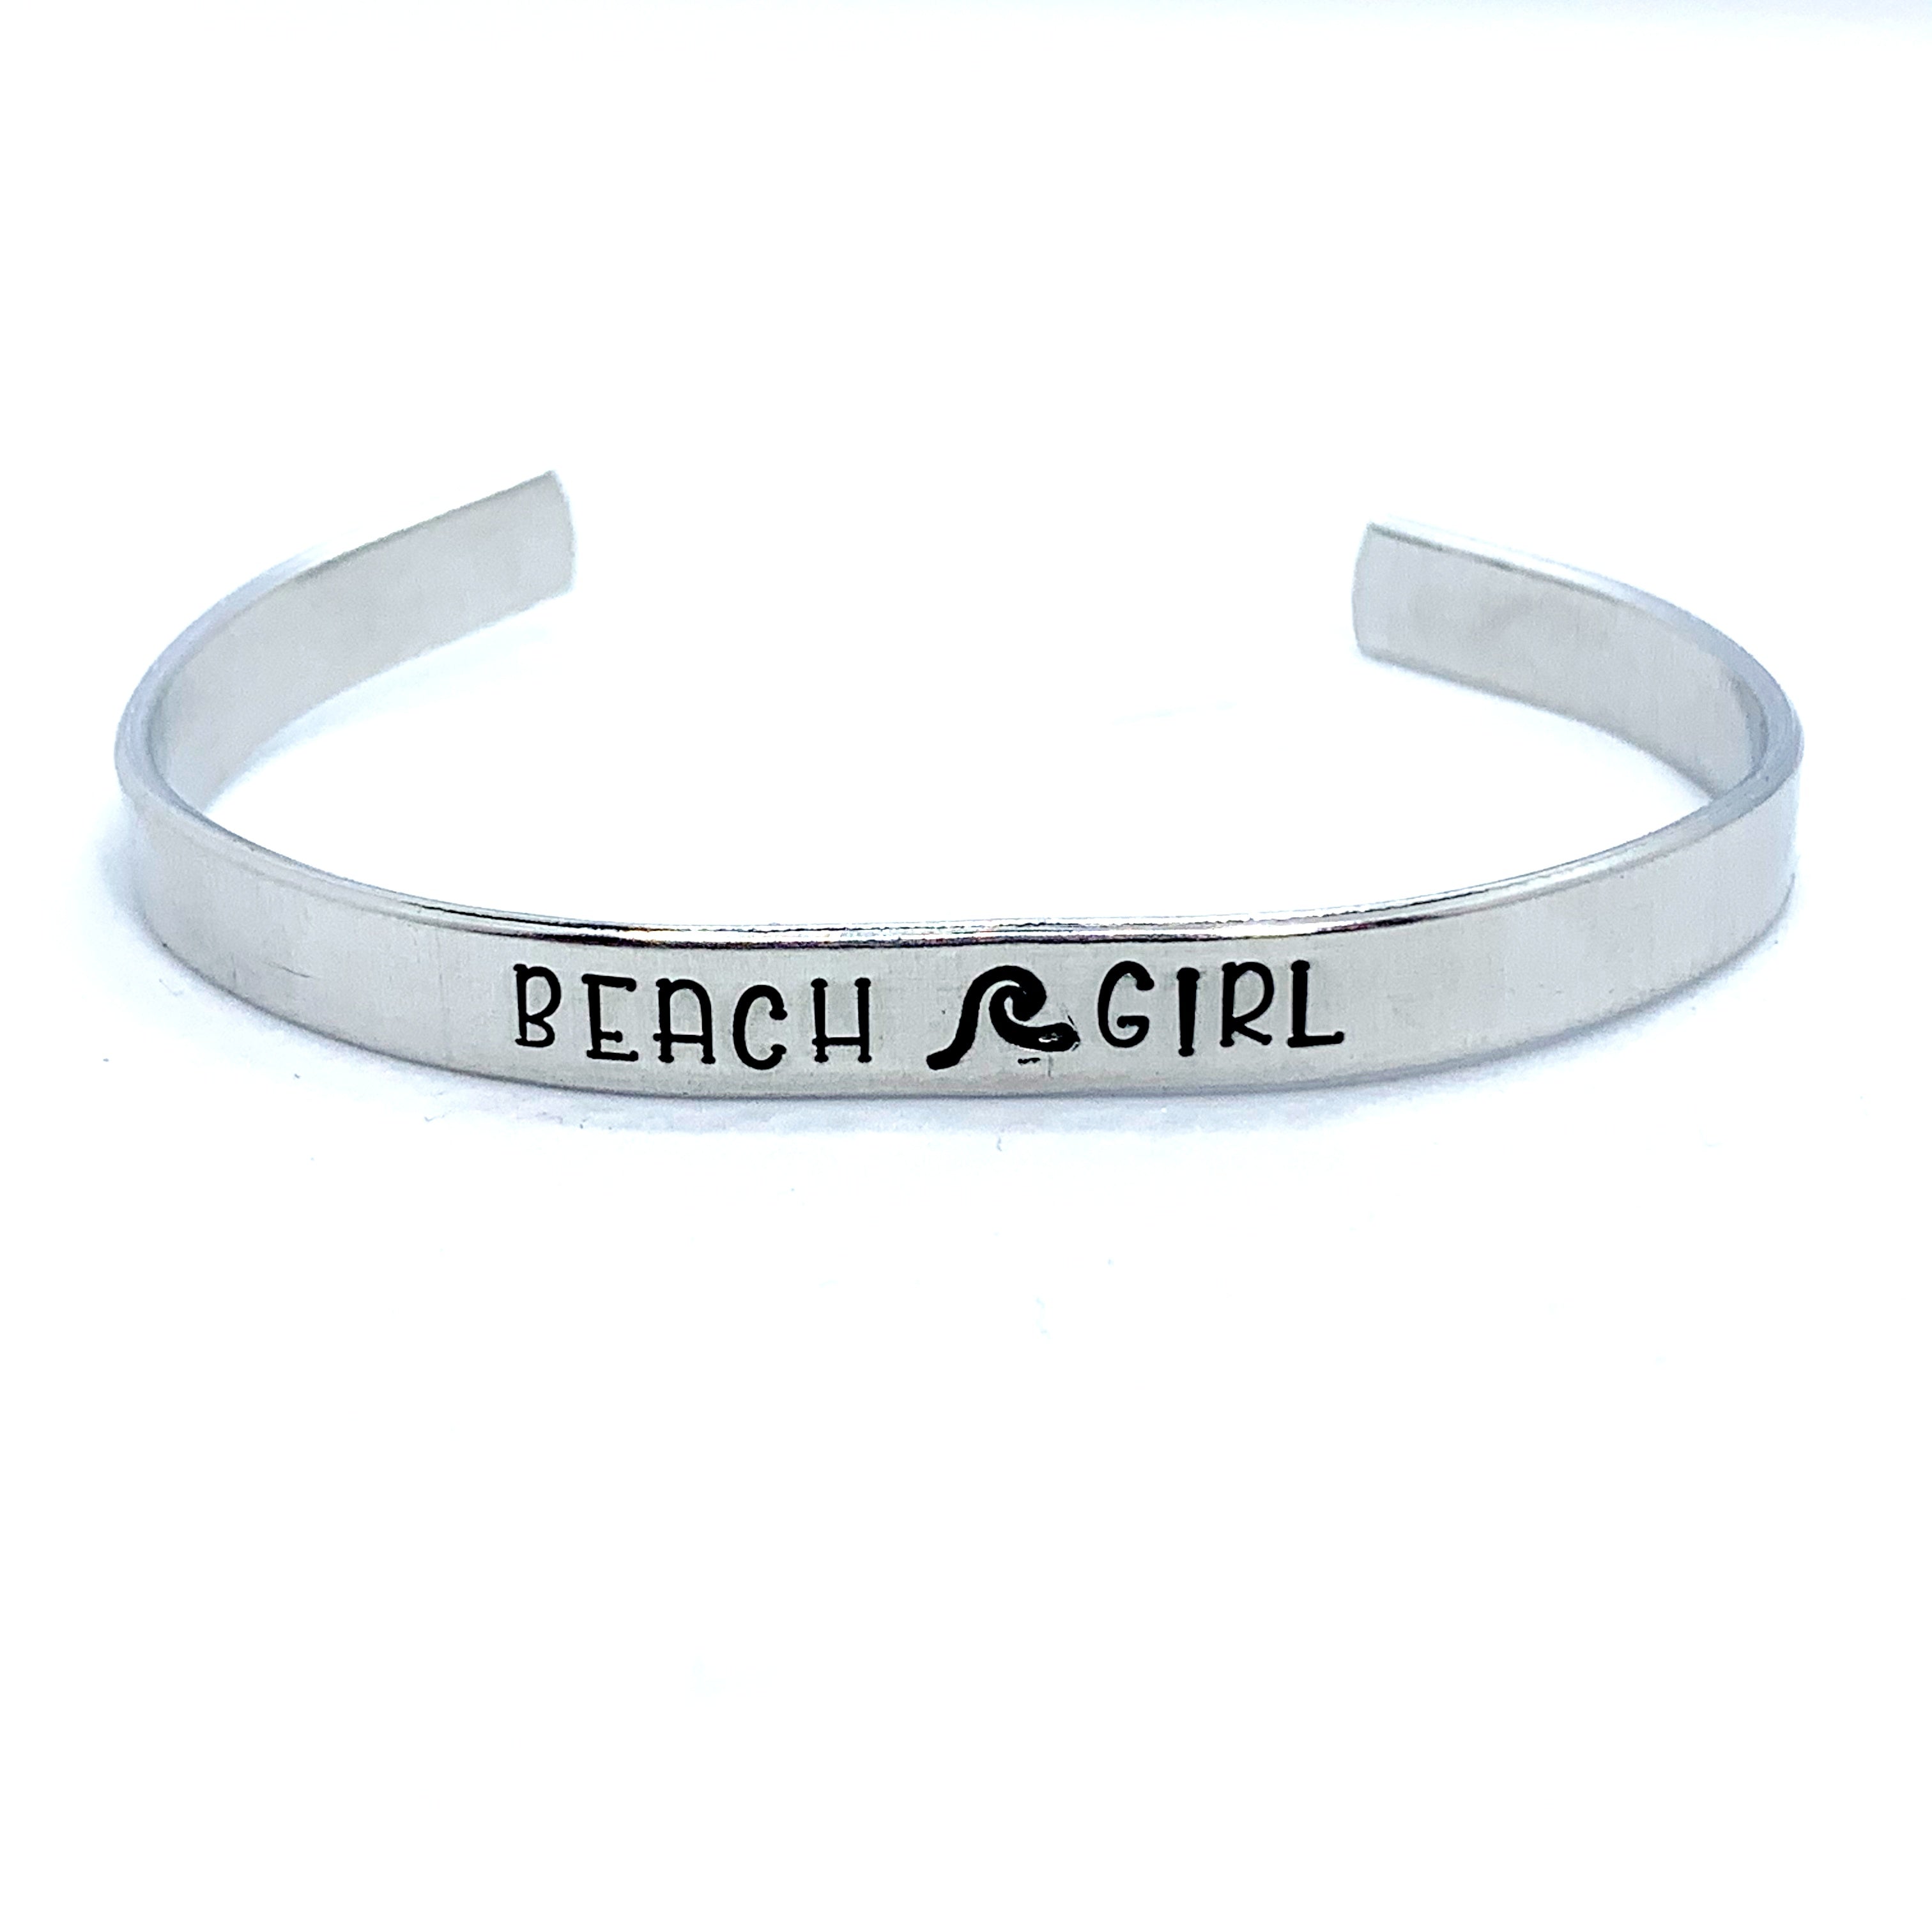 ¼ inch Aluminum Cuff - Beach Girl